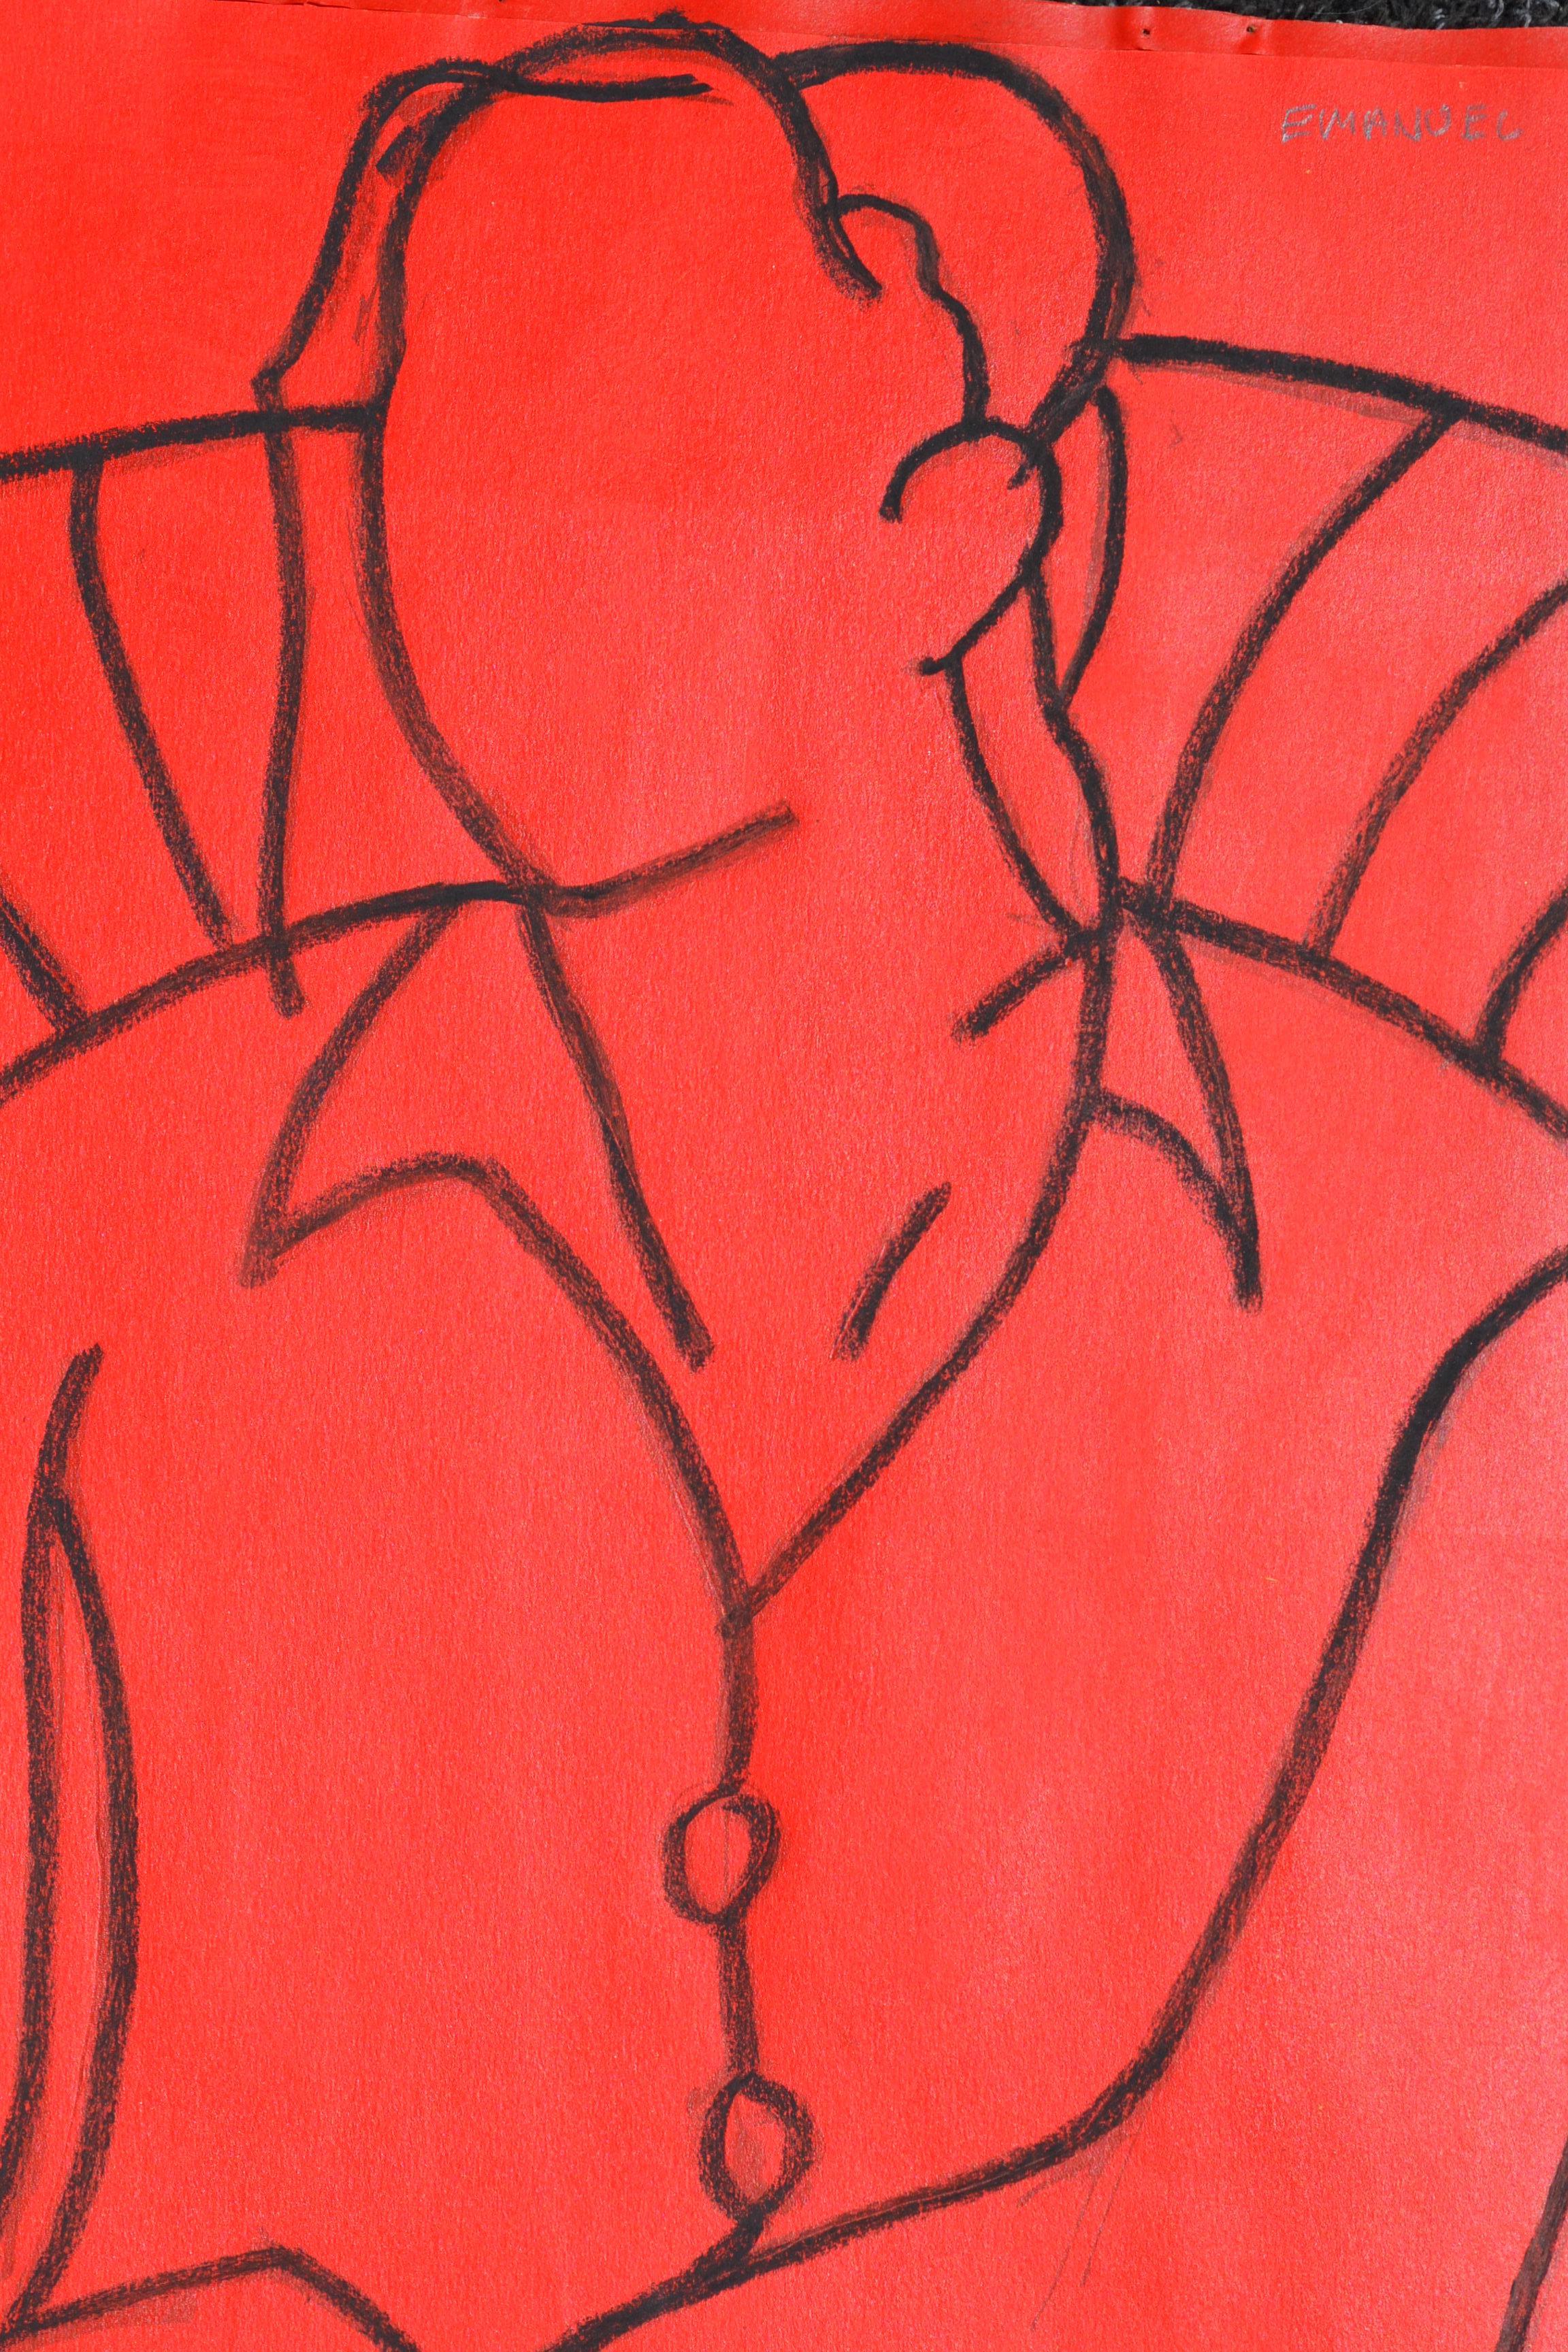 Mono Figure rouge : peinture figurative contemporaine en techniques mixtes de John Emanuel